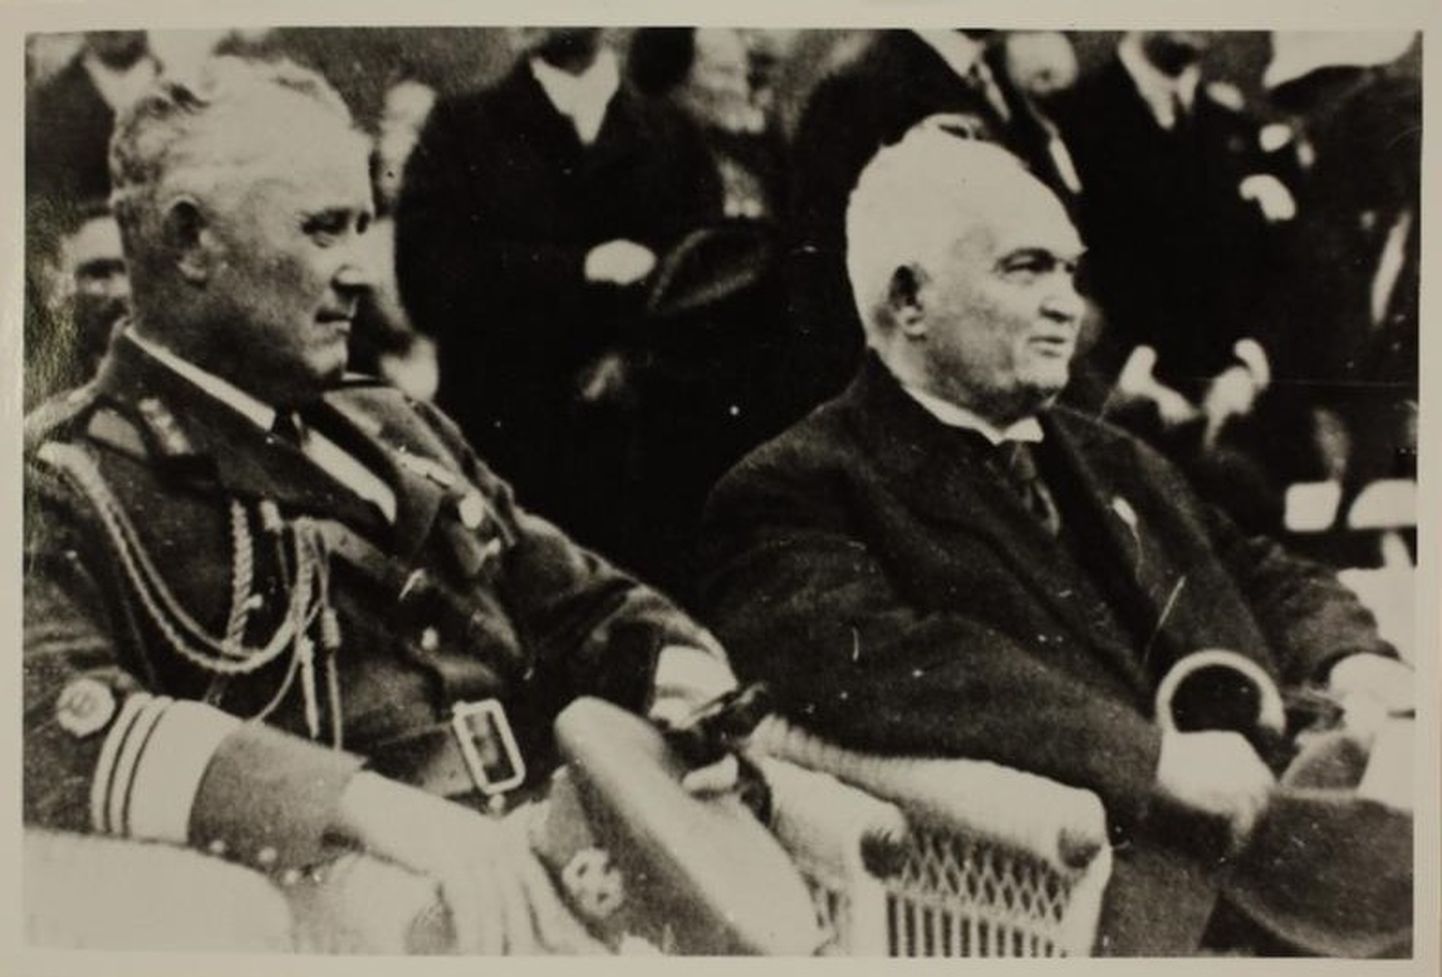 Johan Laidoner ja Konstantin Päts haarasid riigitüüri omavahel hästi koordineeritult ning hoidsid seda enda käes kuni Nõukogude okupatsiooni ja anneksioonini 1940. aastal. Hilisem täiskindral Laidoner lootis saada president Pätsi ametijärglaseks.